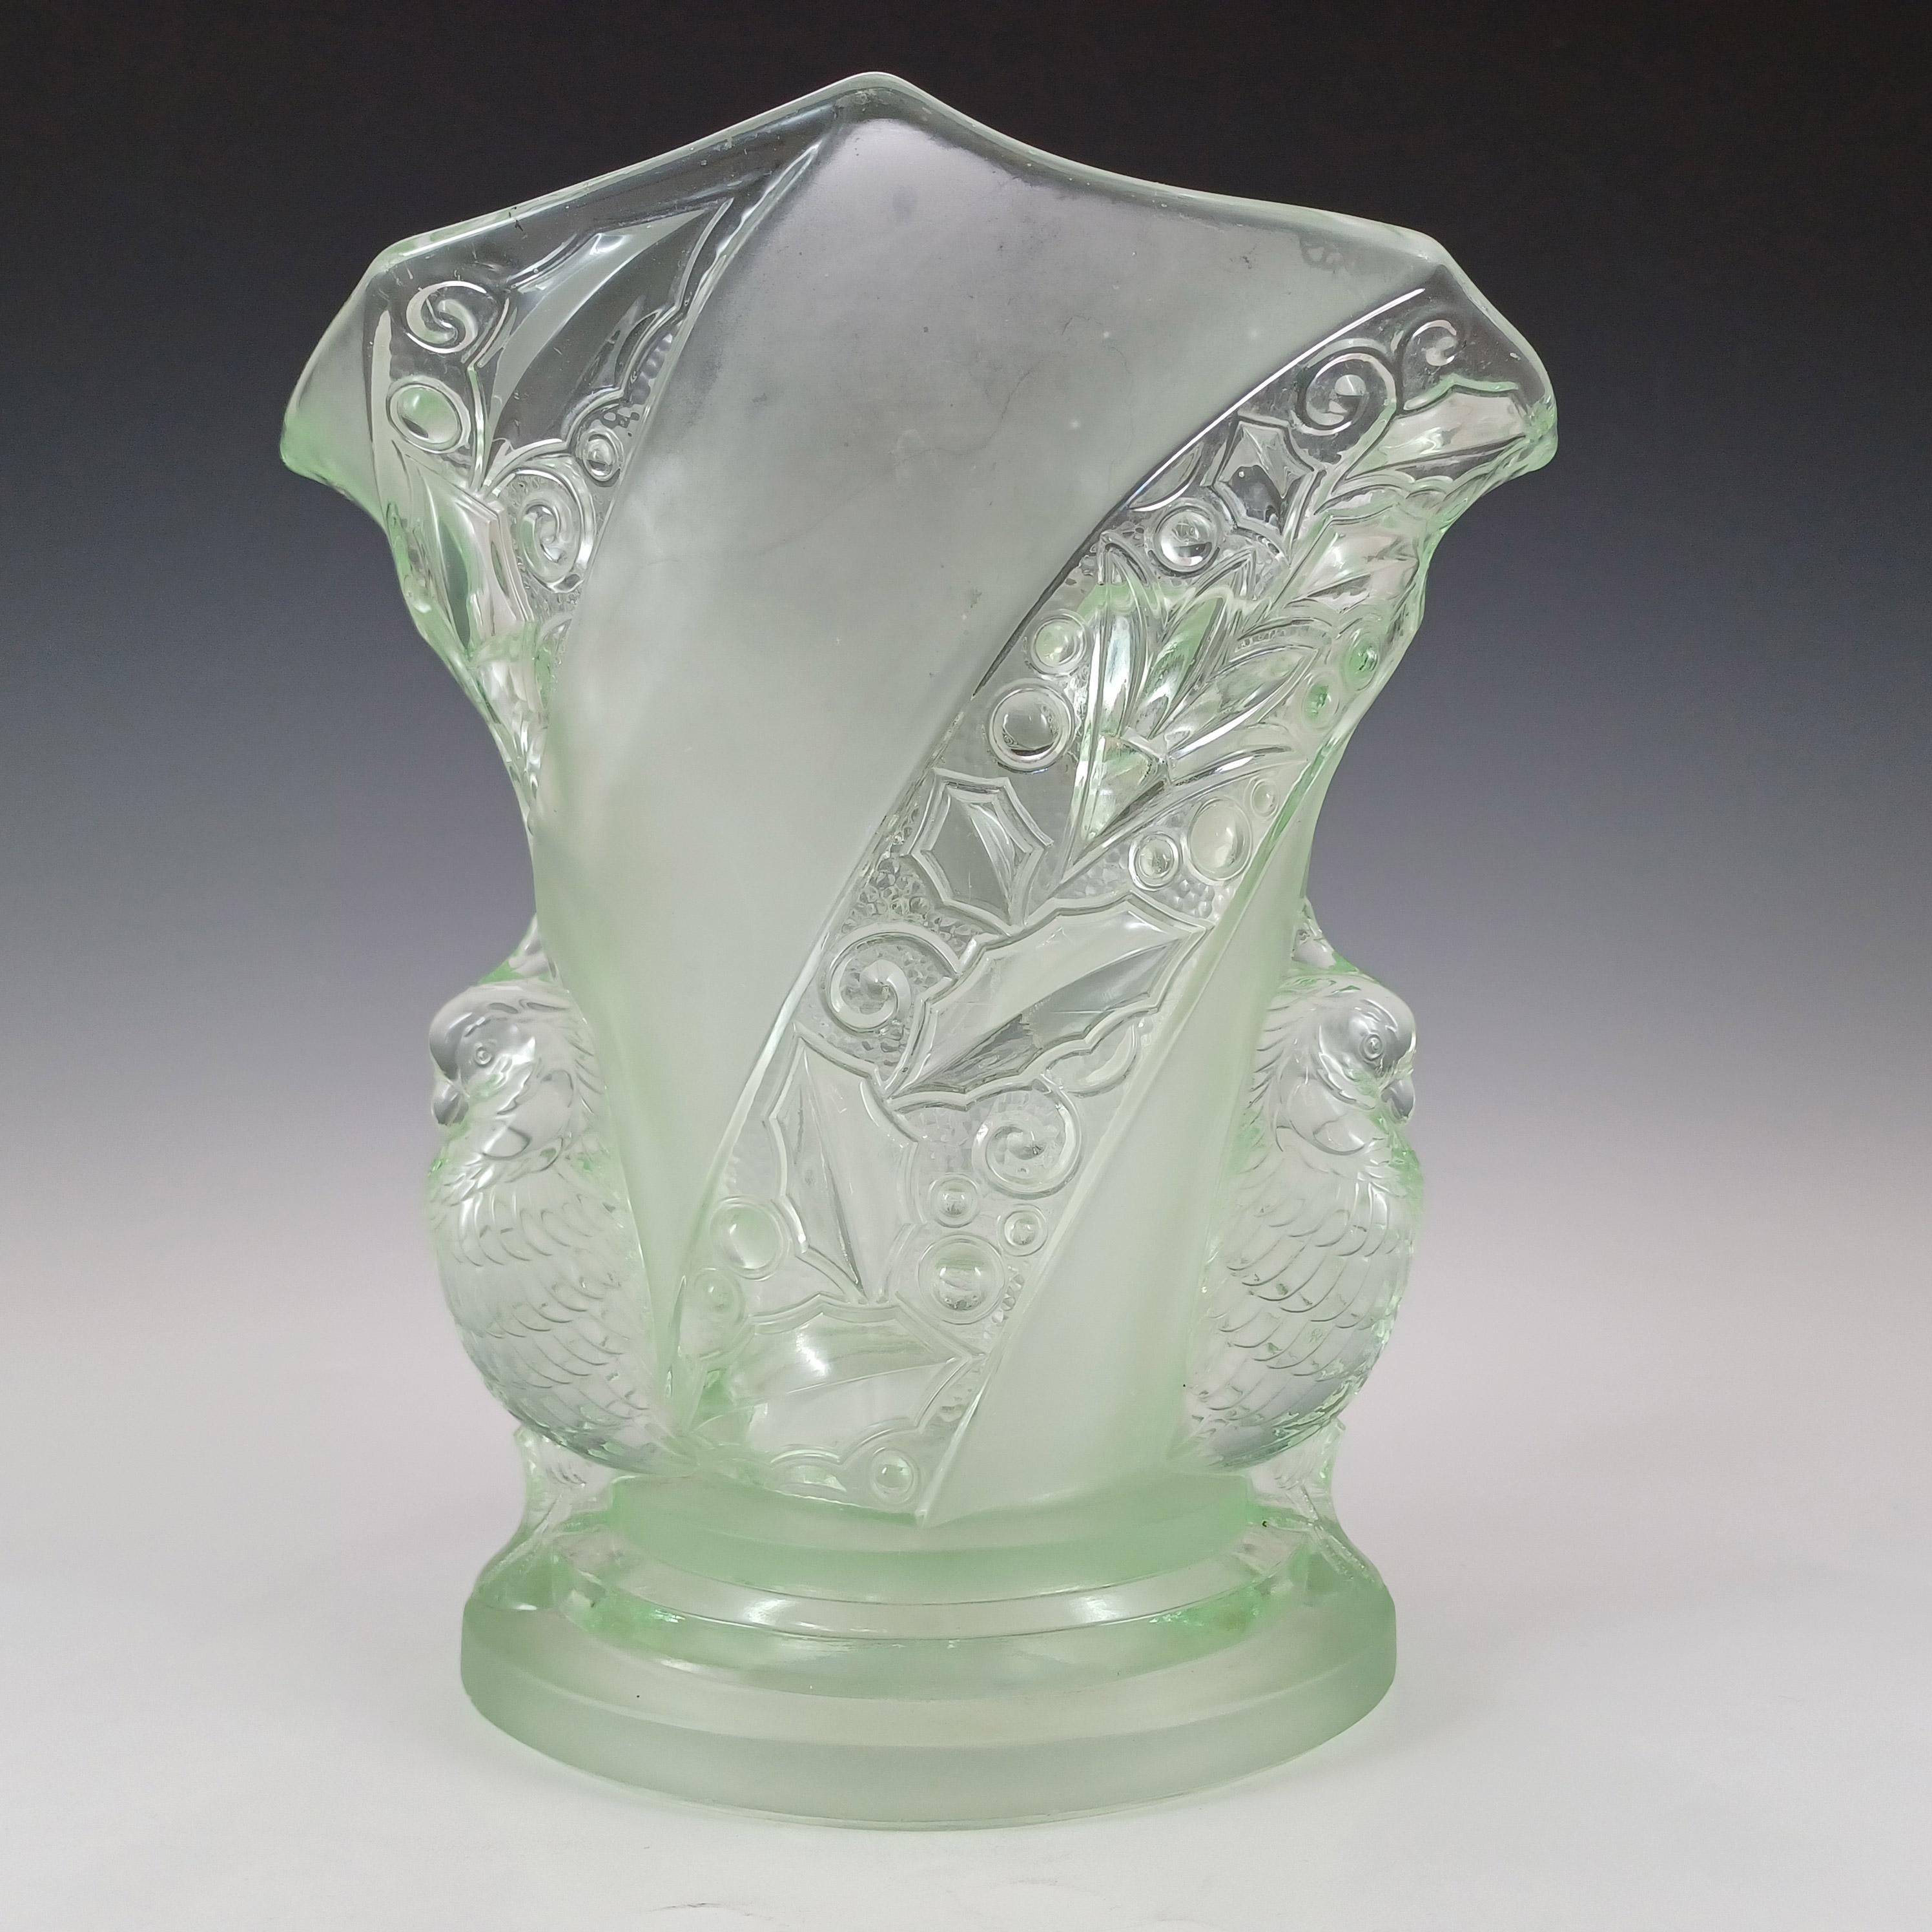 Magnifique grand et lourd (1,3 kilos sans emballage) vase en verre vert art déco 